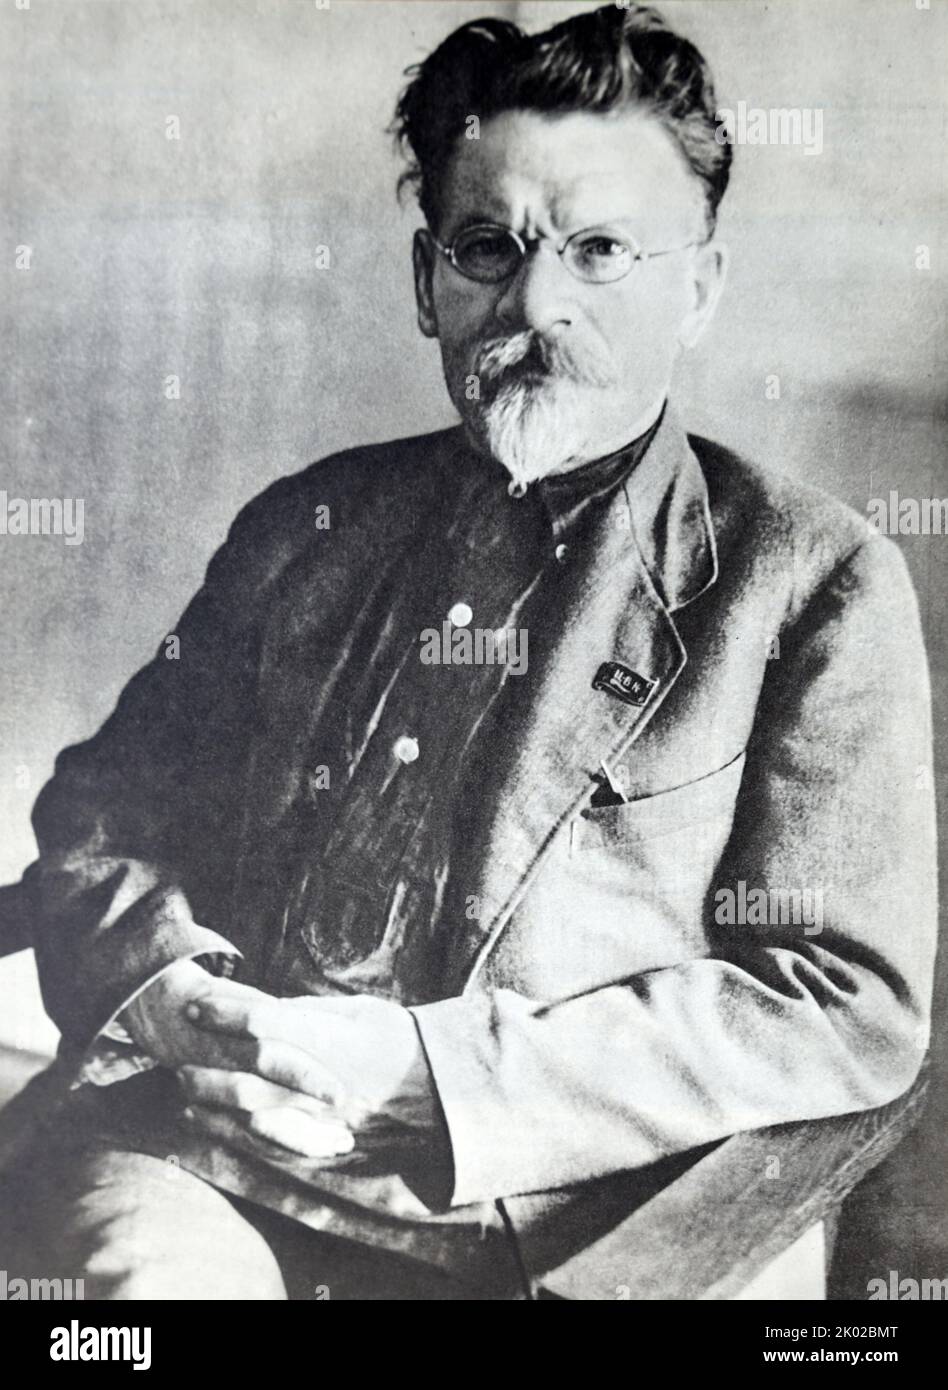 Mikhail Kalinin (1875-1946), Bolshevik revolutionary and Soviet functionary. Photo by P. Otsup. Stock Photo